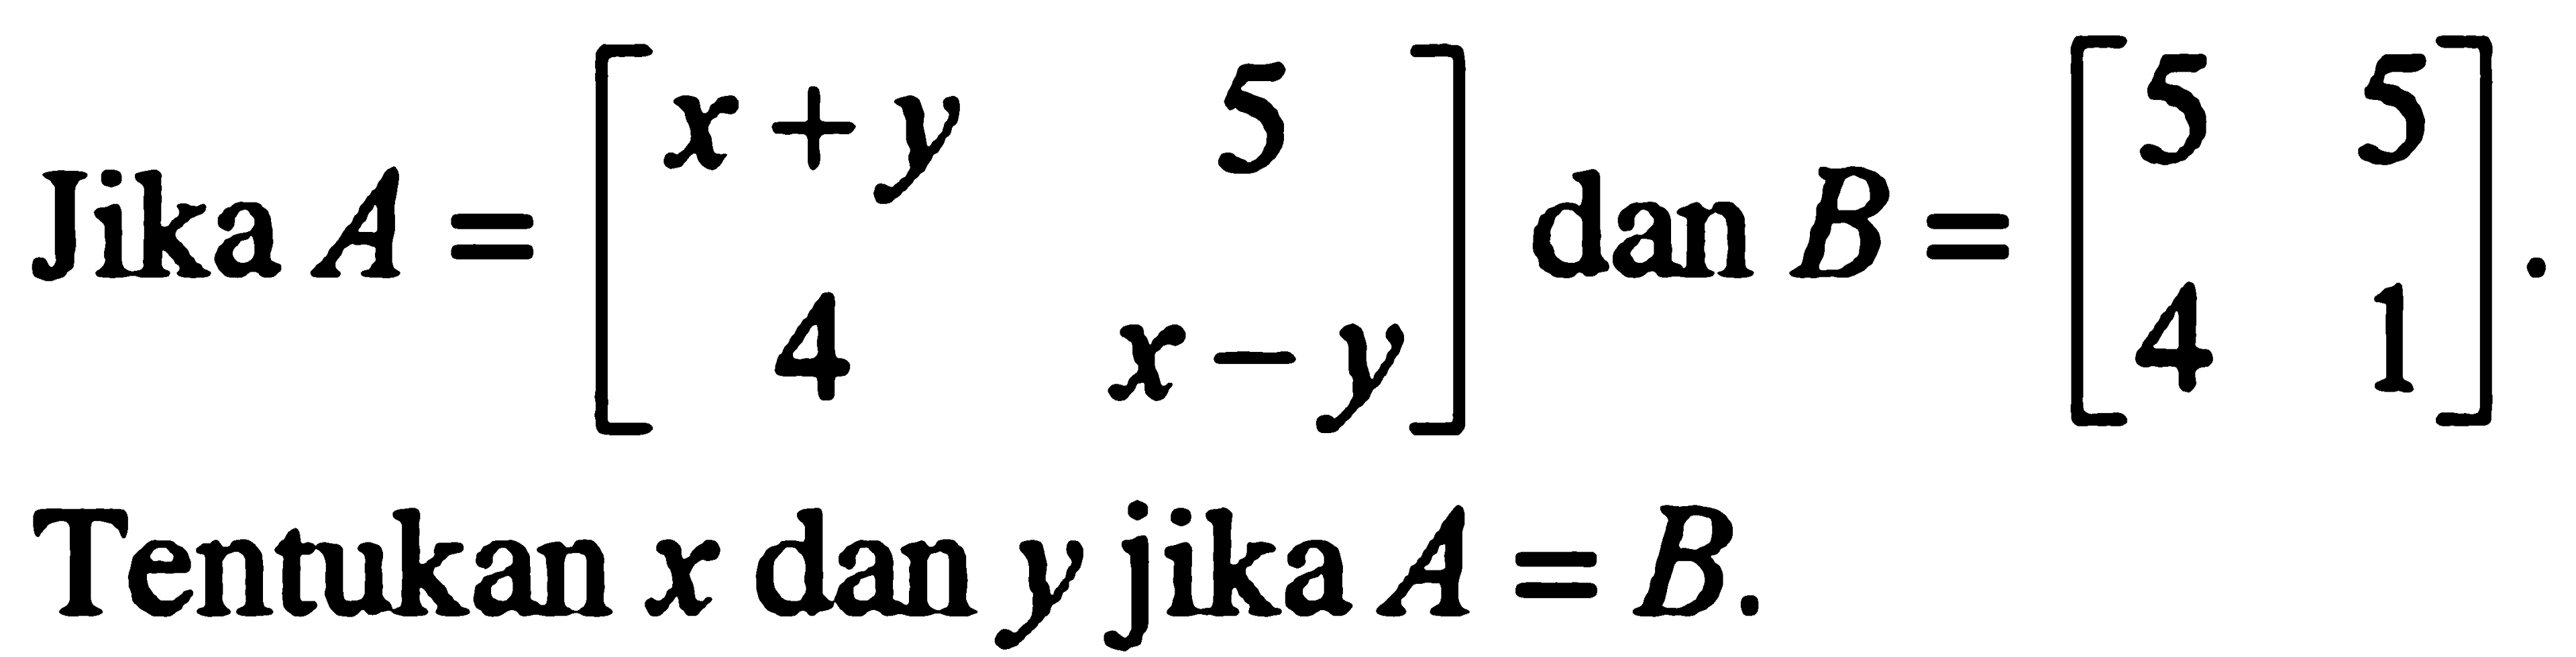 Jika A = [x+y 5 4 x-y] dan B=[5 5 4 1]. Tentukan x dan y jika A=B.